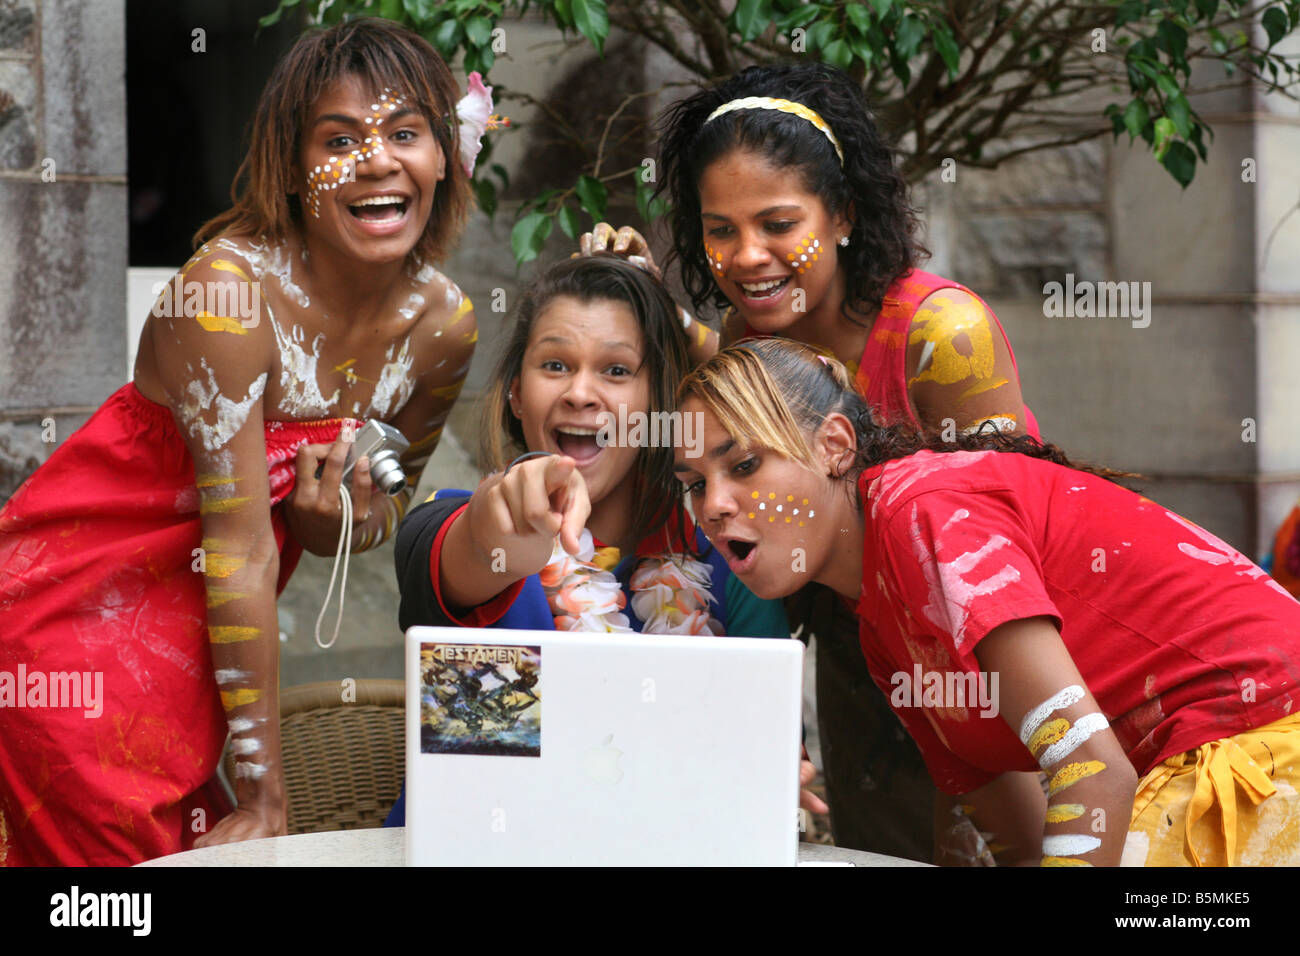 Indígenas Australianos niñas juegan con una cámara de ordenador Foto de stock